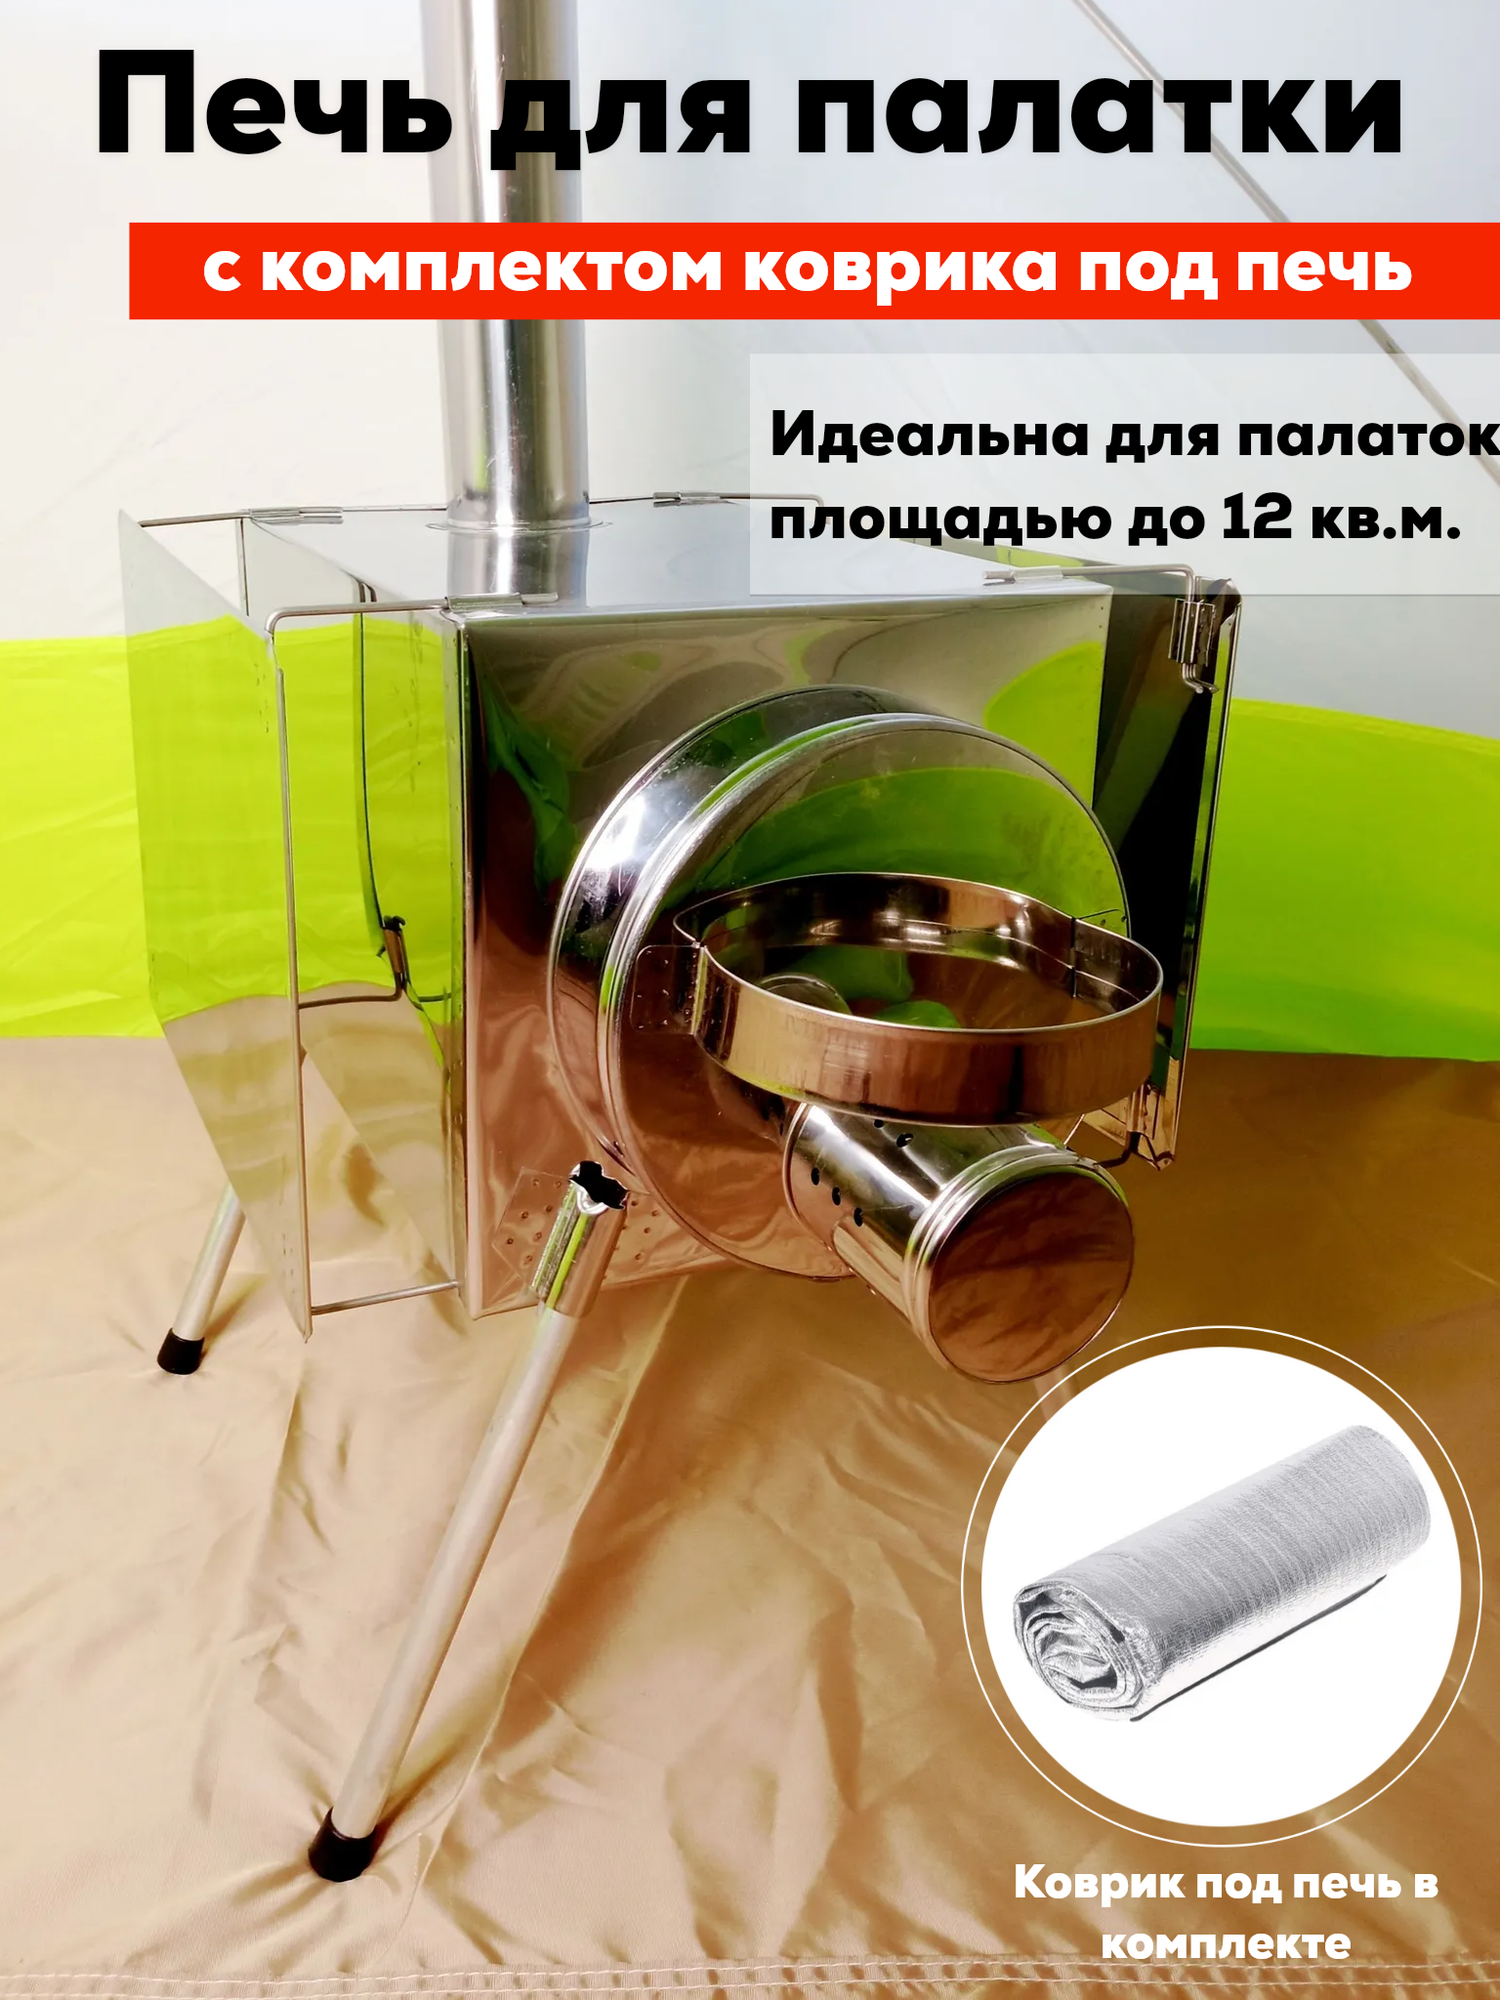 Комплект печь Пошехонка Малая с экранами + Коврик 75х100 см.